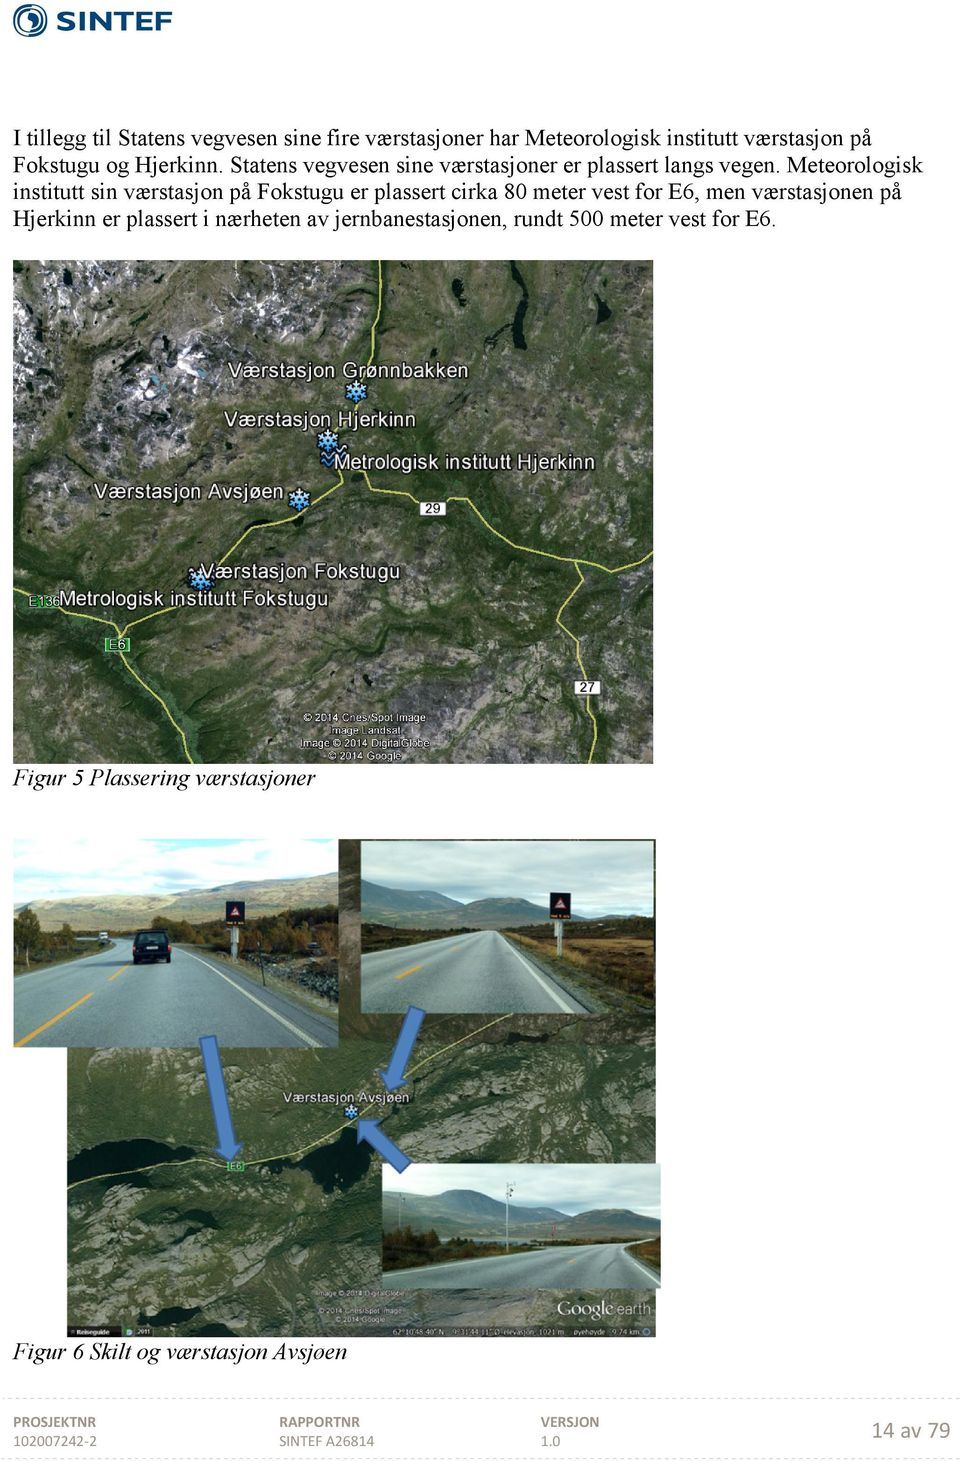 Meteorologisk institutt sin værstasjon på Fokstugu er plassert cirka 80 meter vest for E6, men værstasjonen på